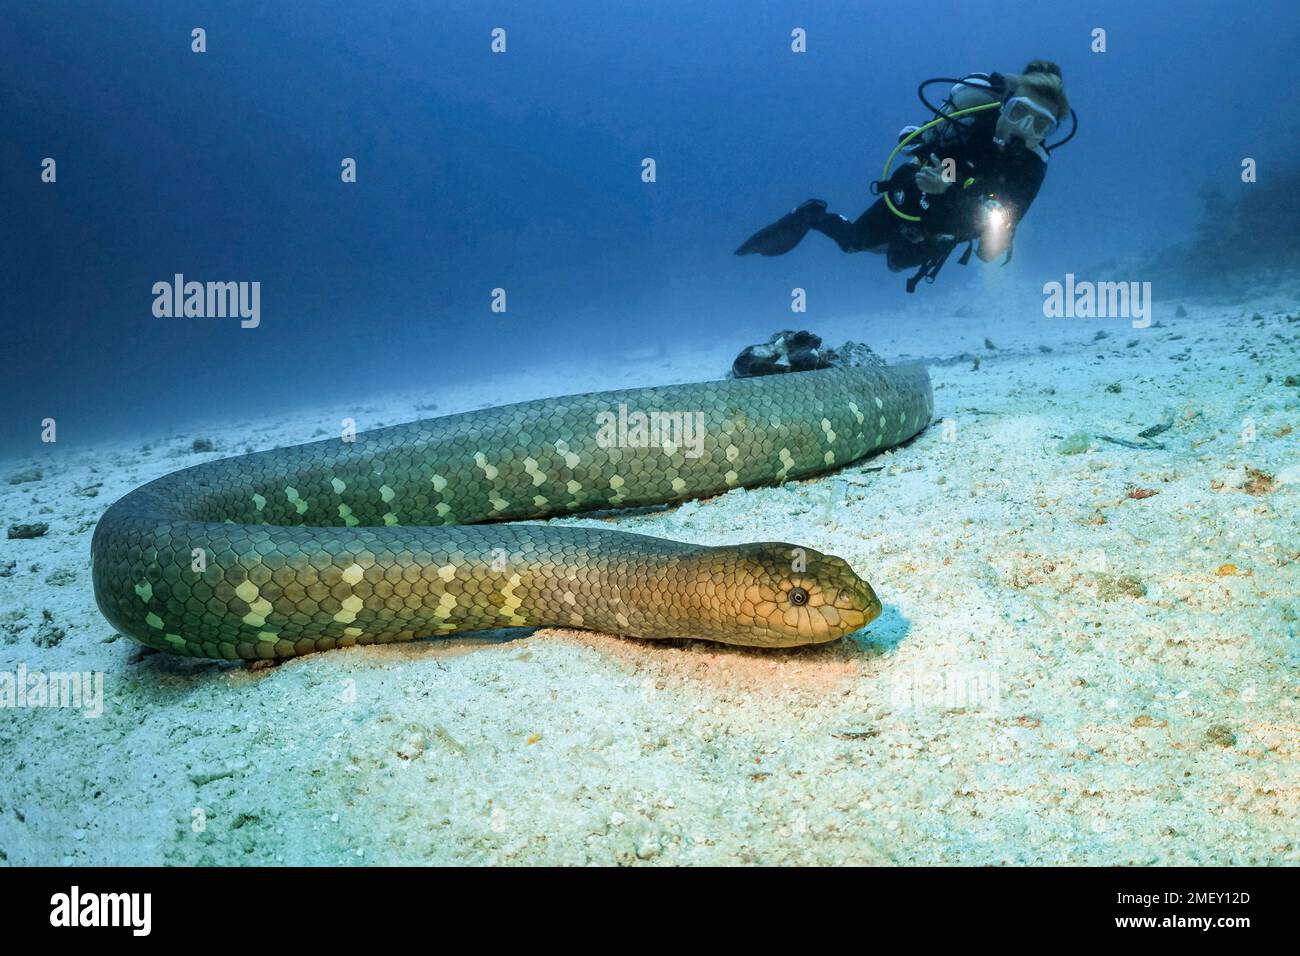 Serpent de mer d'olive, Aipysurus laevis, et plongeur de plongée, îles Kei, îles Forgotten, Moluccas, Indonésie, Indo-Océan Pacifique Banque D'Images